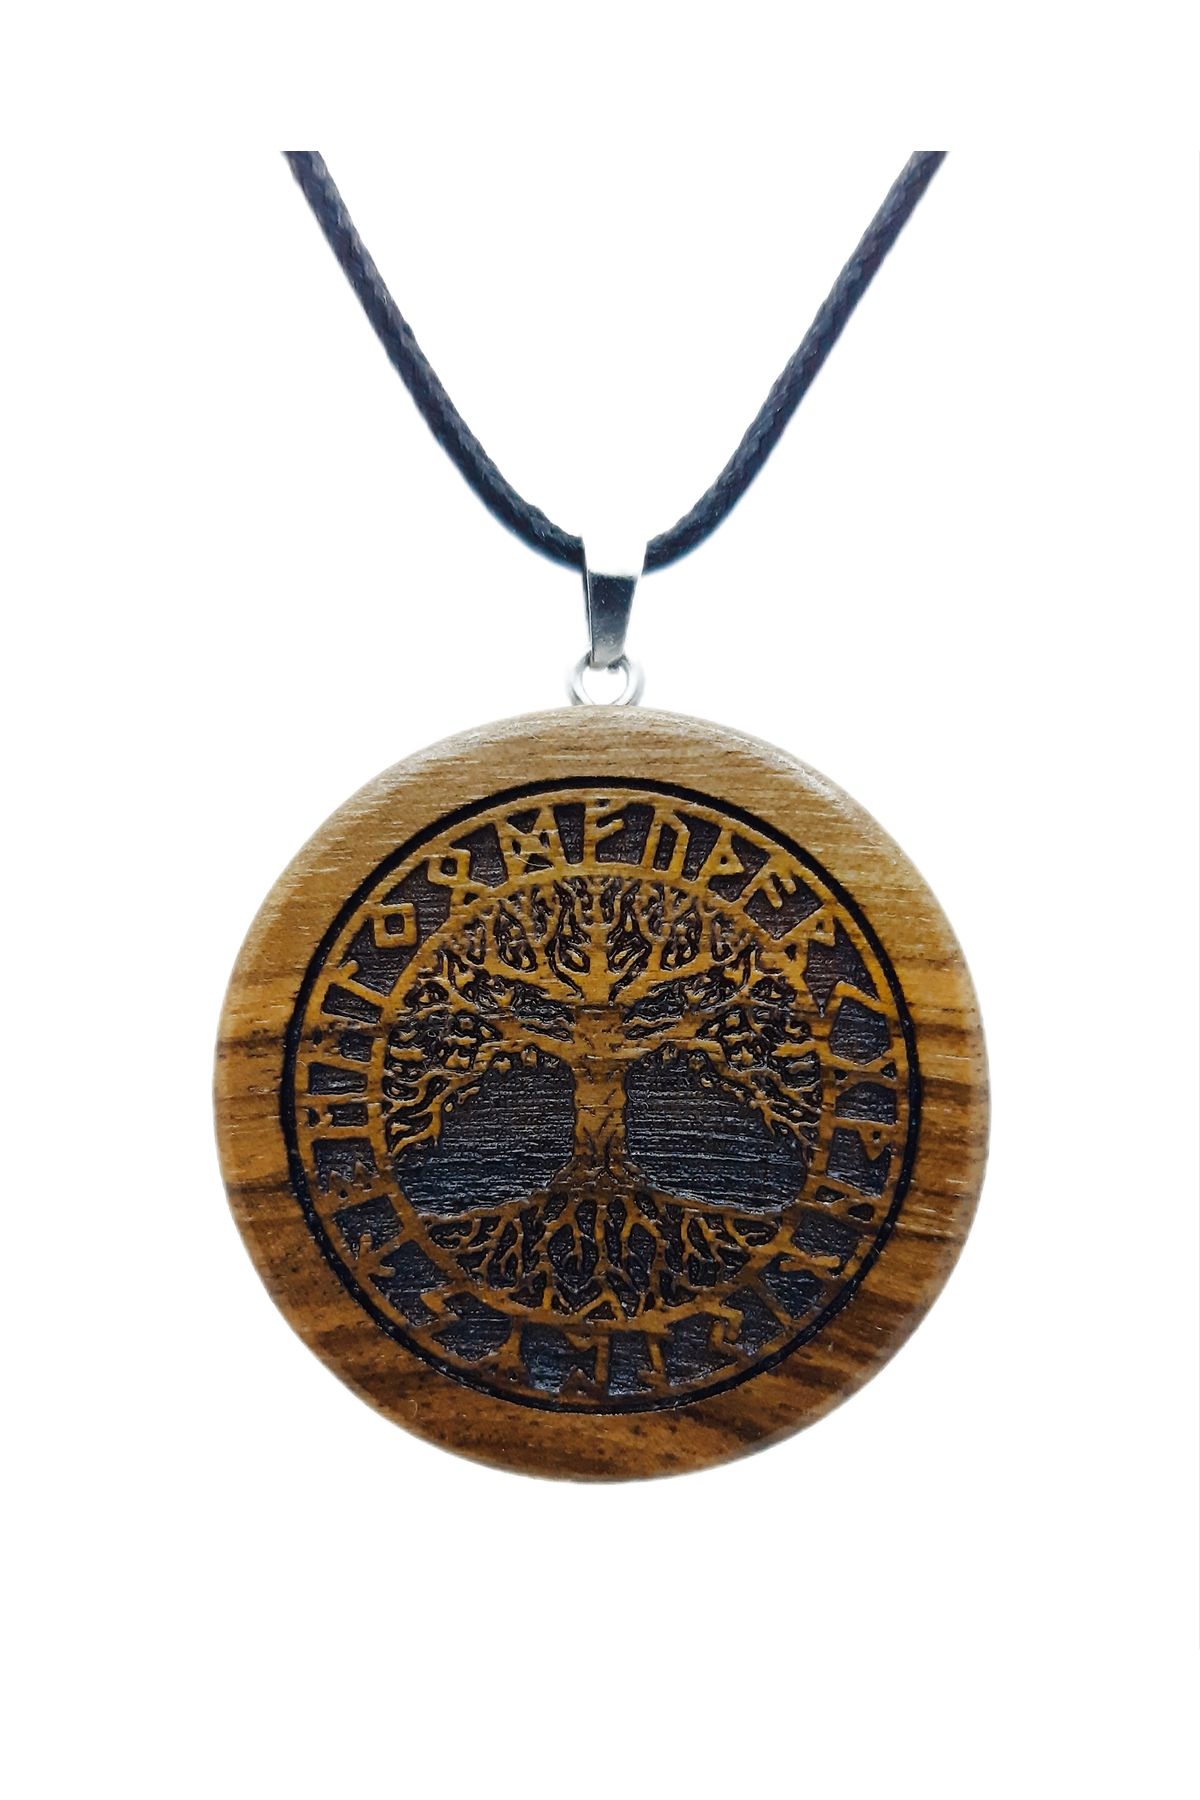 Sinerium Design İsme Özel Hayat Ağacı Rune Ahşap Kolye, Hayat Ağacı, Yaşam Ağacı, Kişiye Özel Hediye, Kelt, Viking